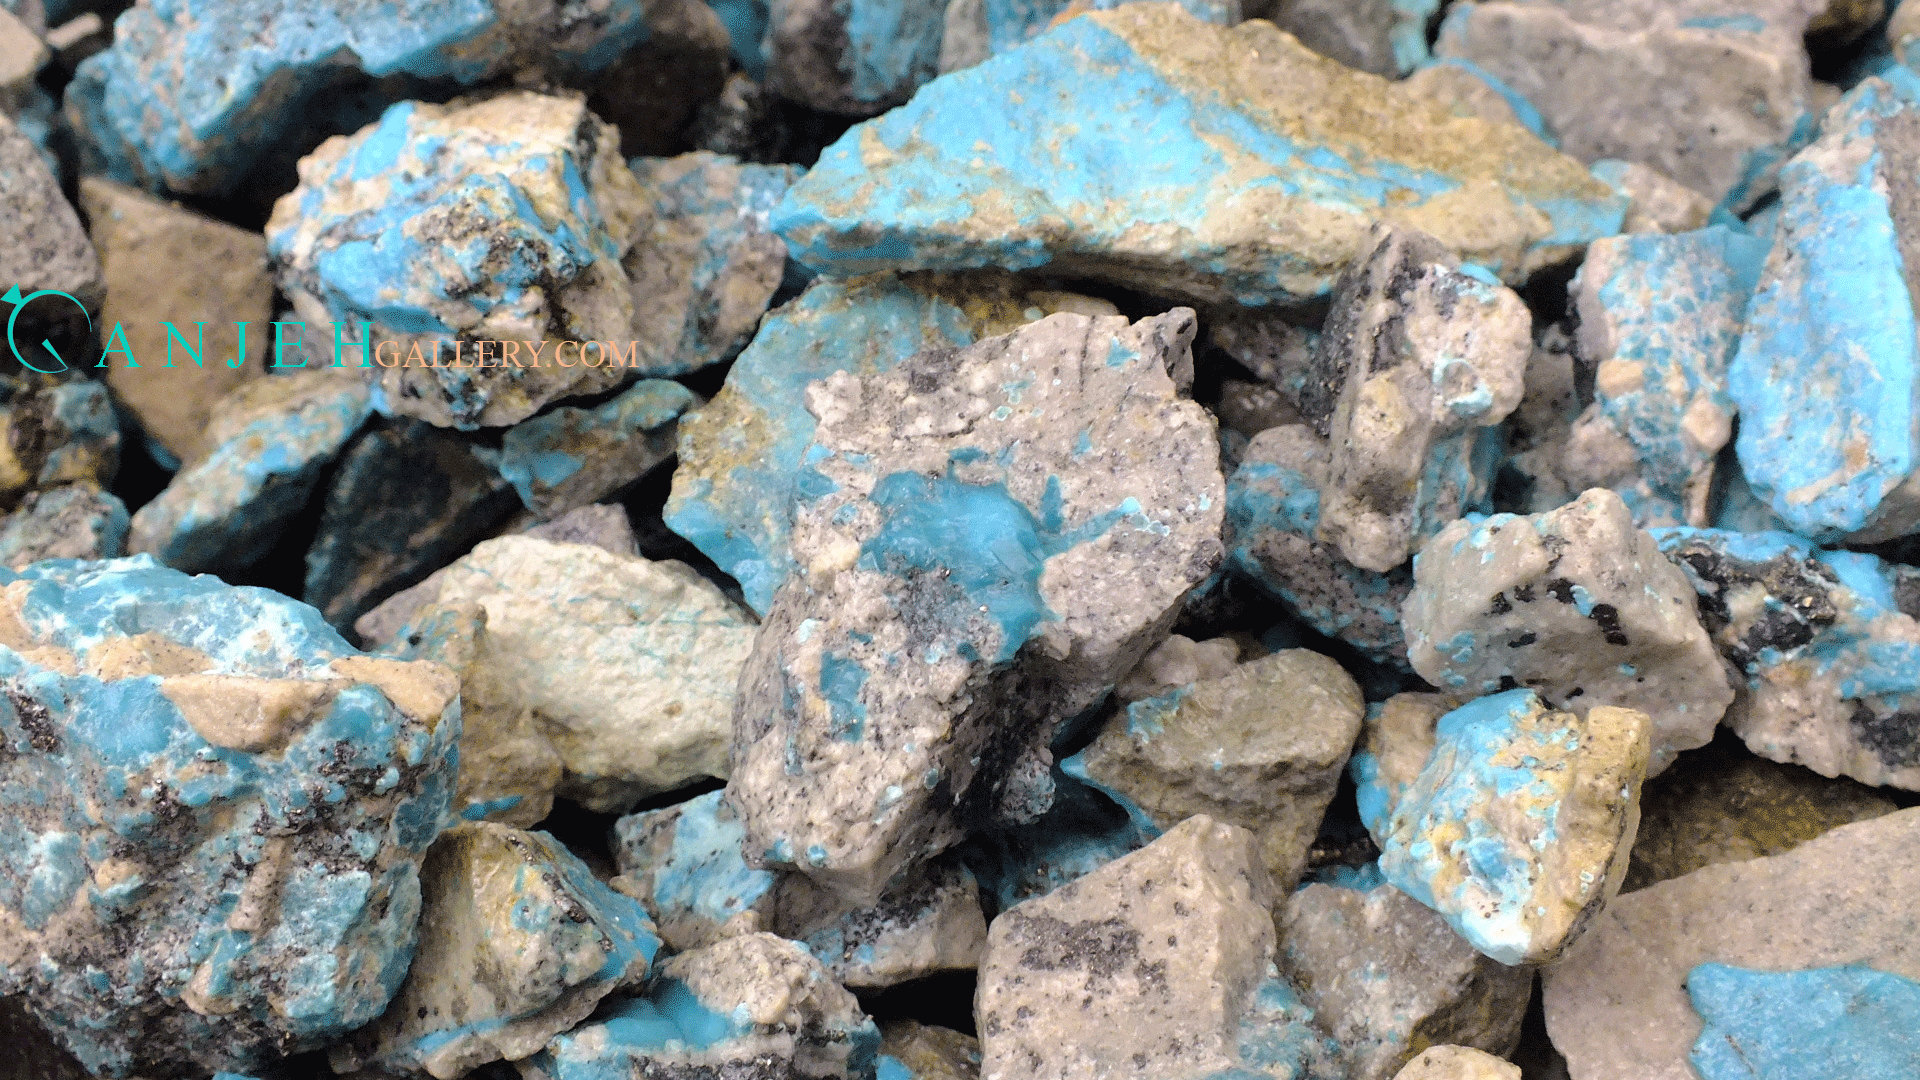 سنگ های راف فیروزه کرمان در گالری گنجه